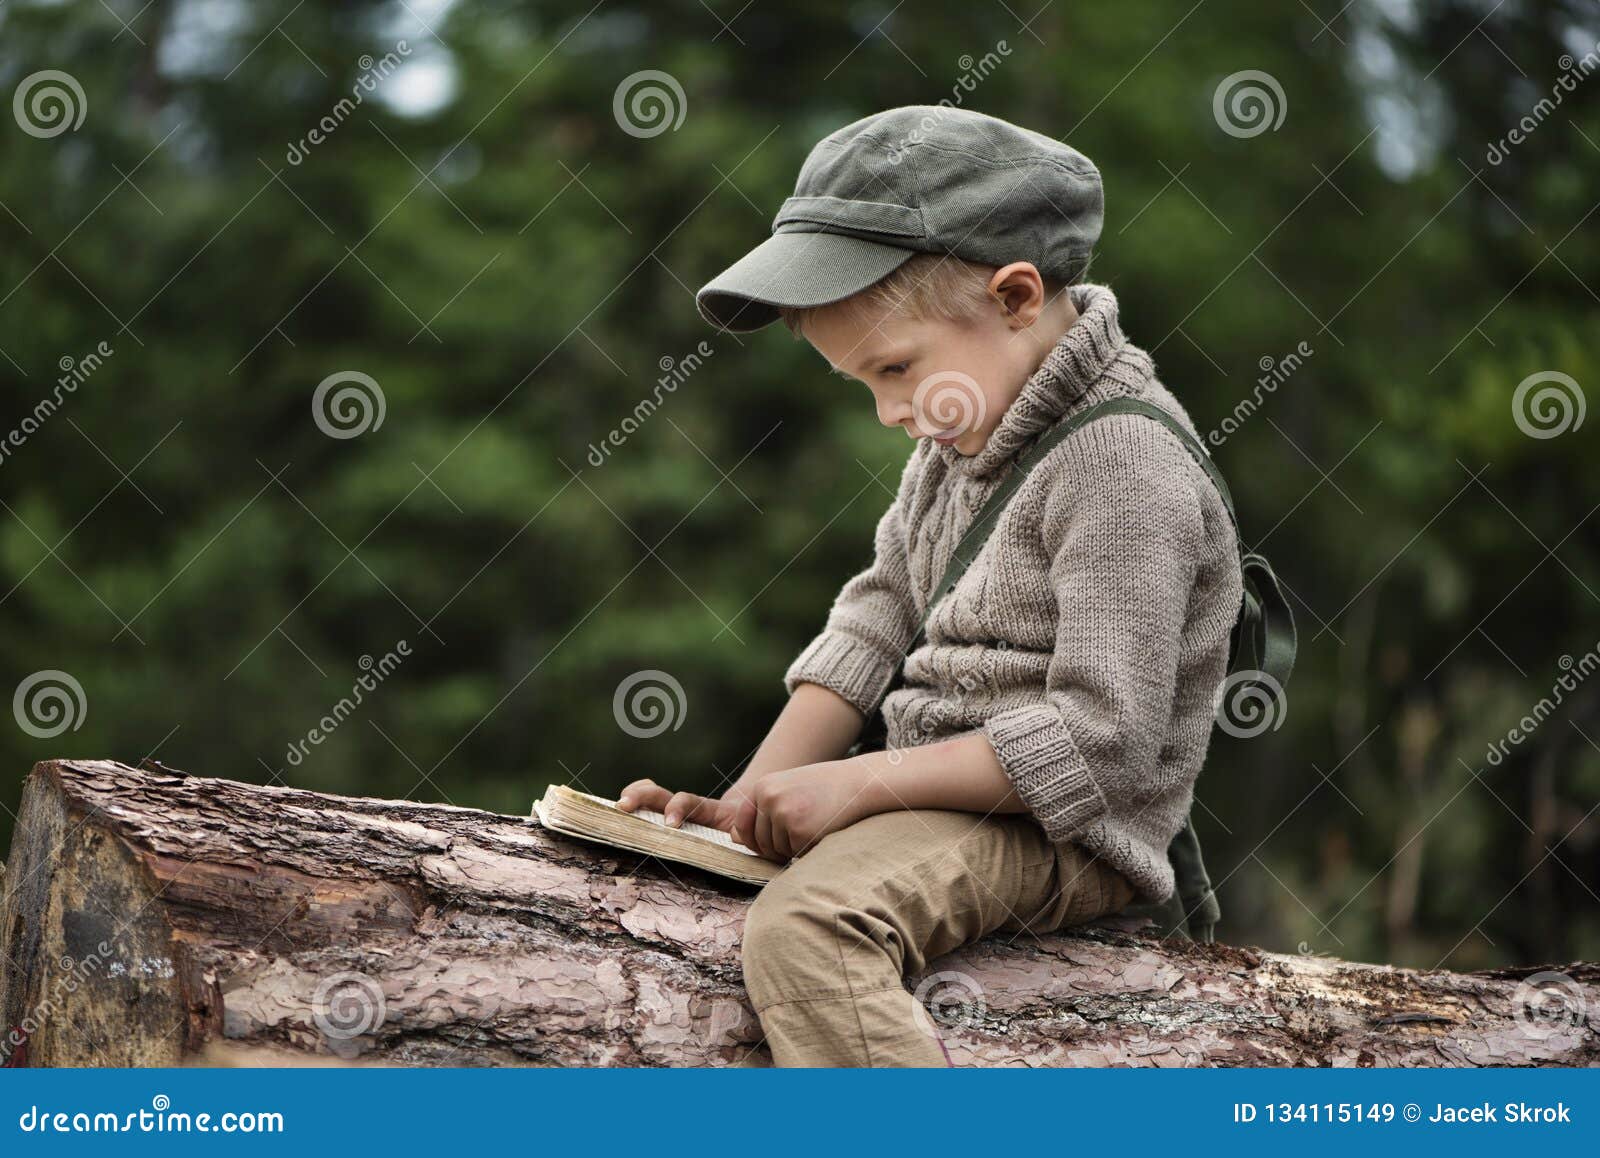 the boy, 5 years old, looks like a trapper, wanderer, lumberjack.